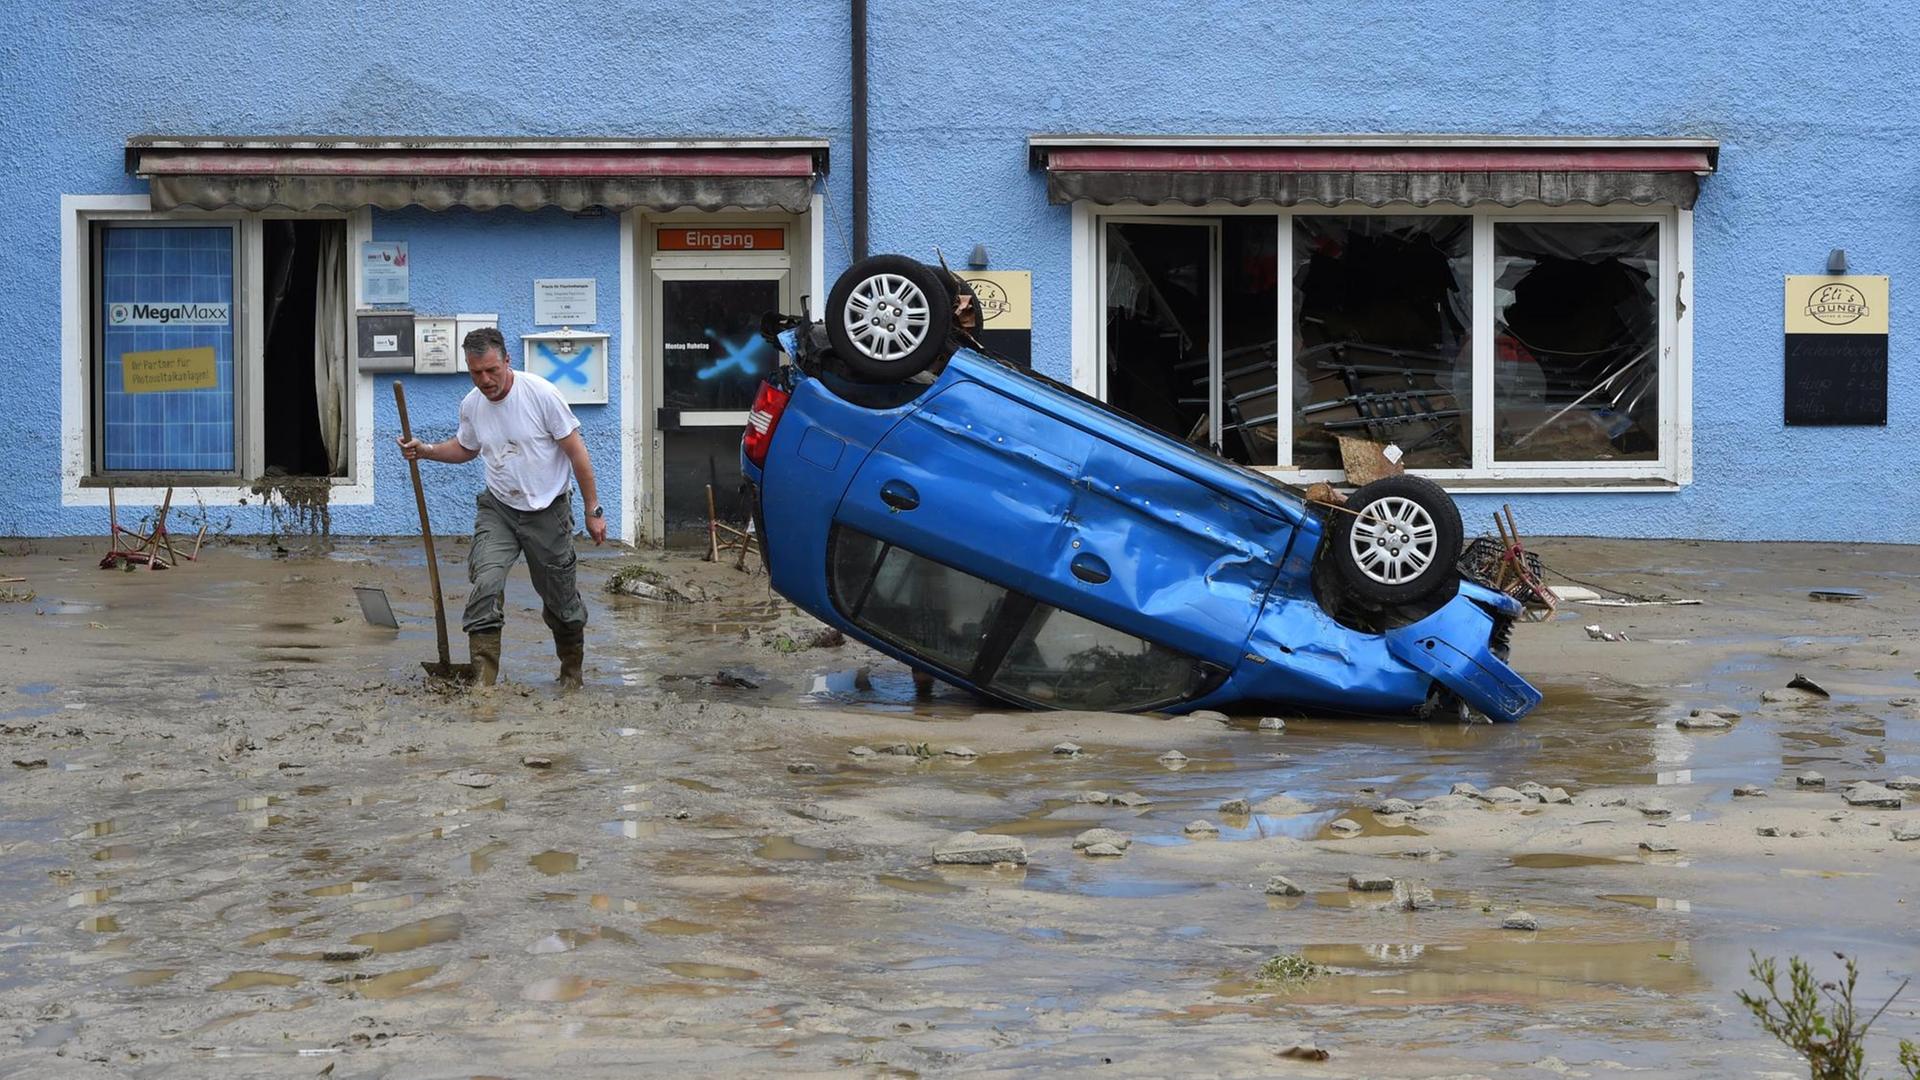 Ein Einwohner des Ortes Simbach am Inn in Bayern steht im Hochwasser-Gebiet auf einer überfluteten Straße neben einem beschädigten Auto, das auf dem Dach liegt.